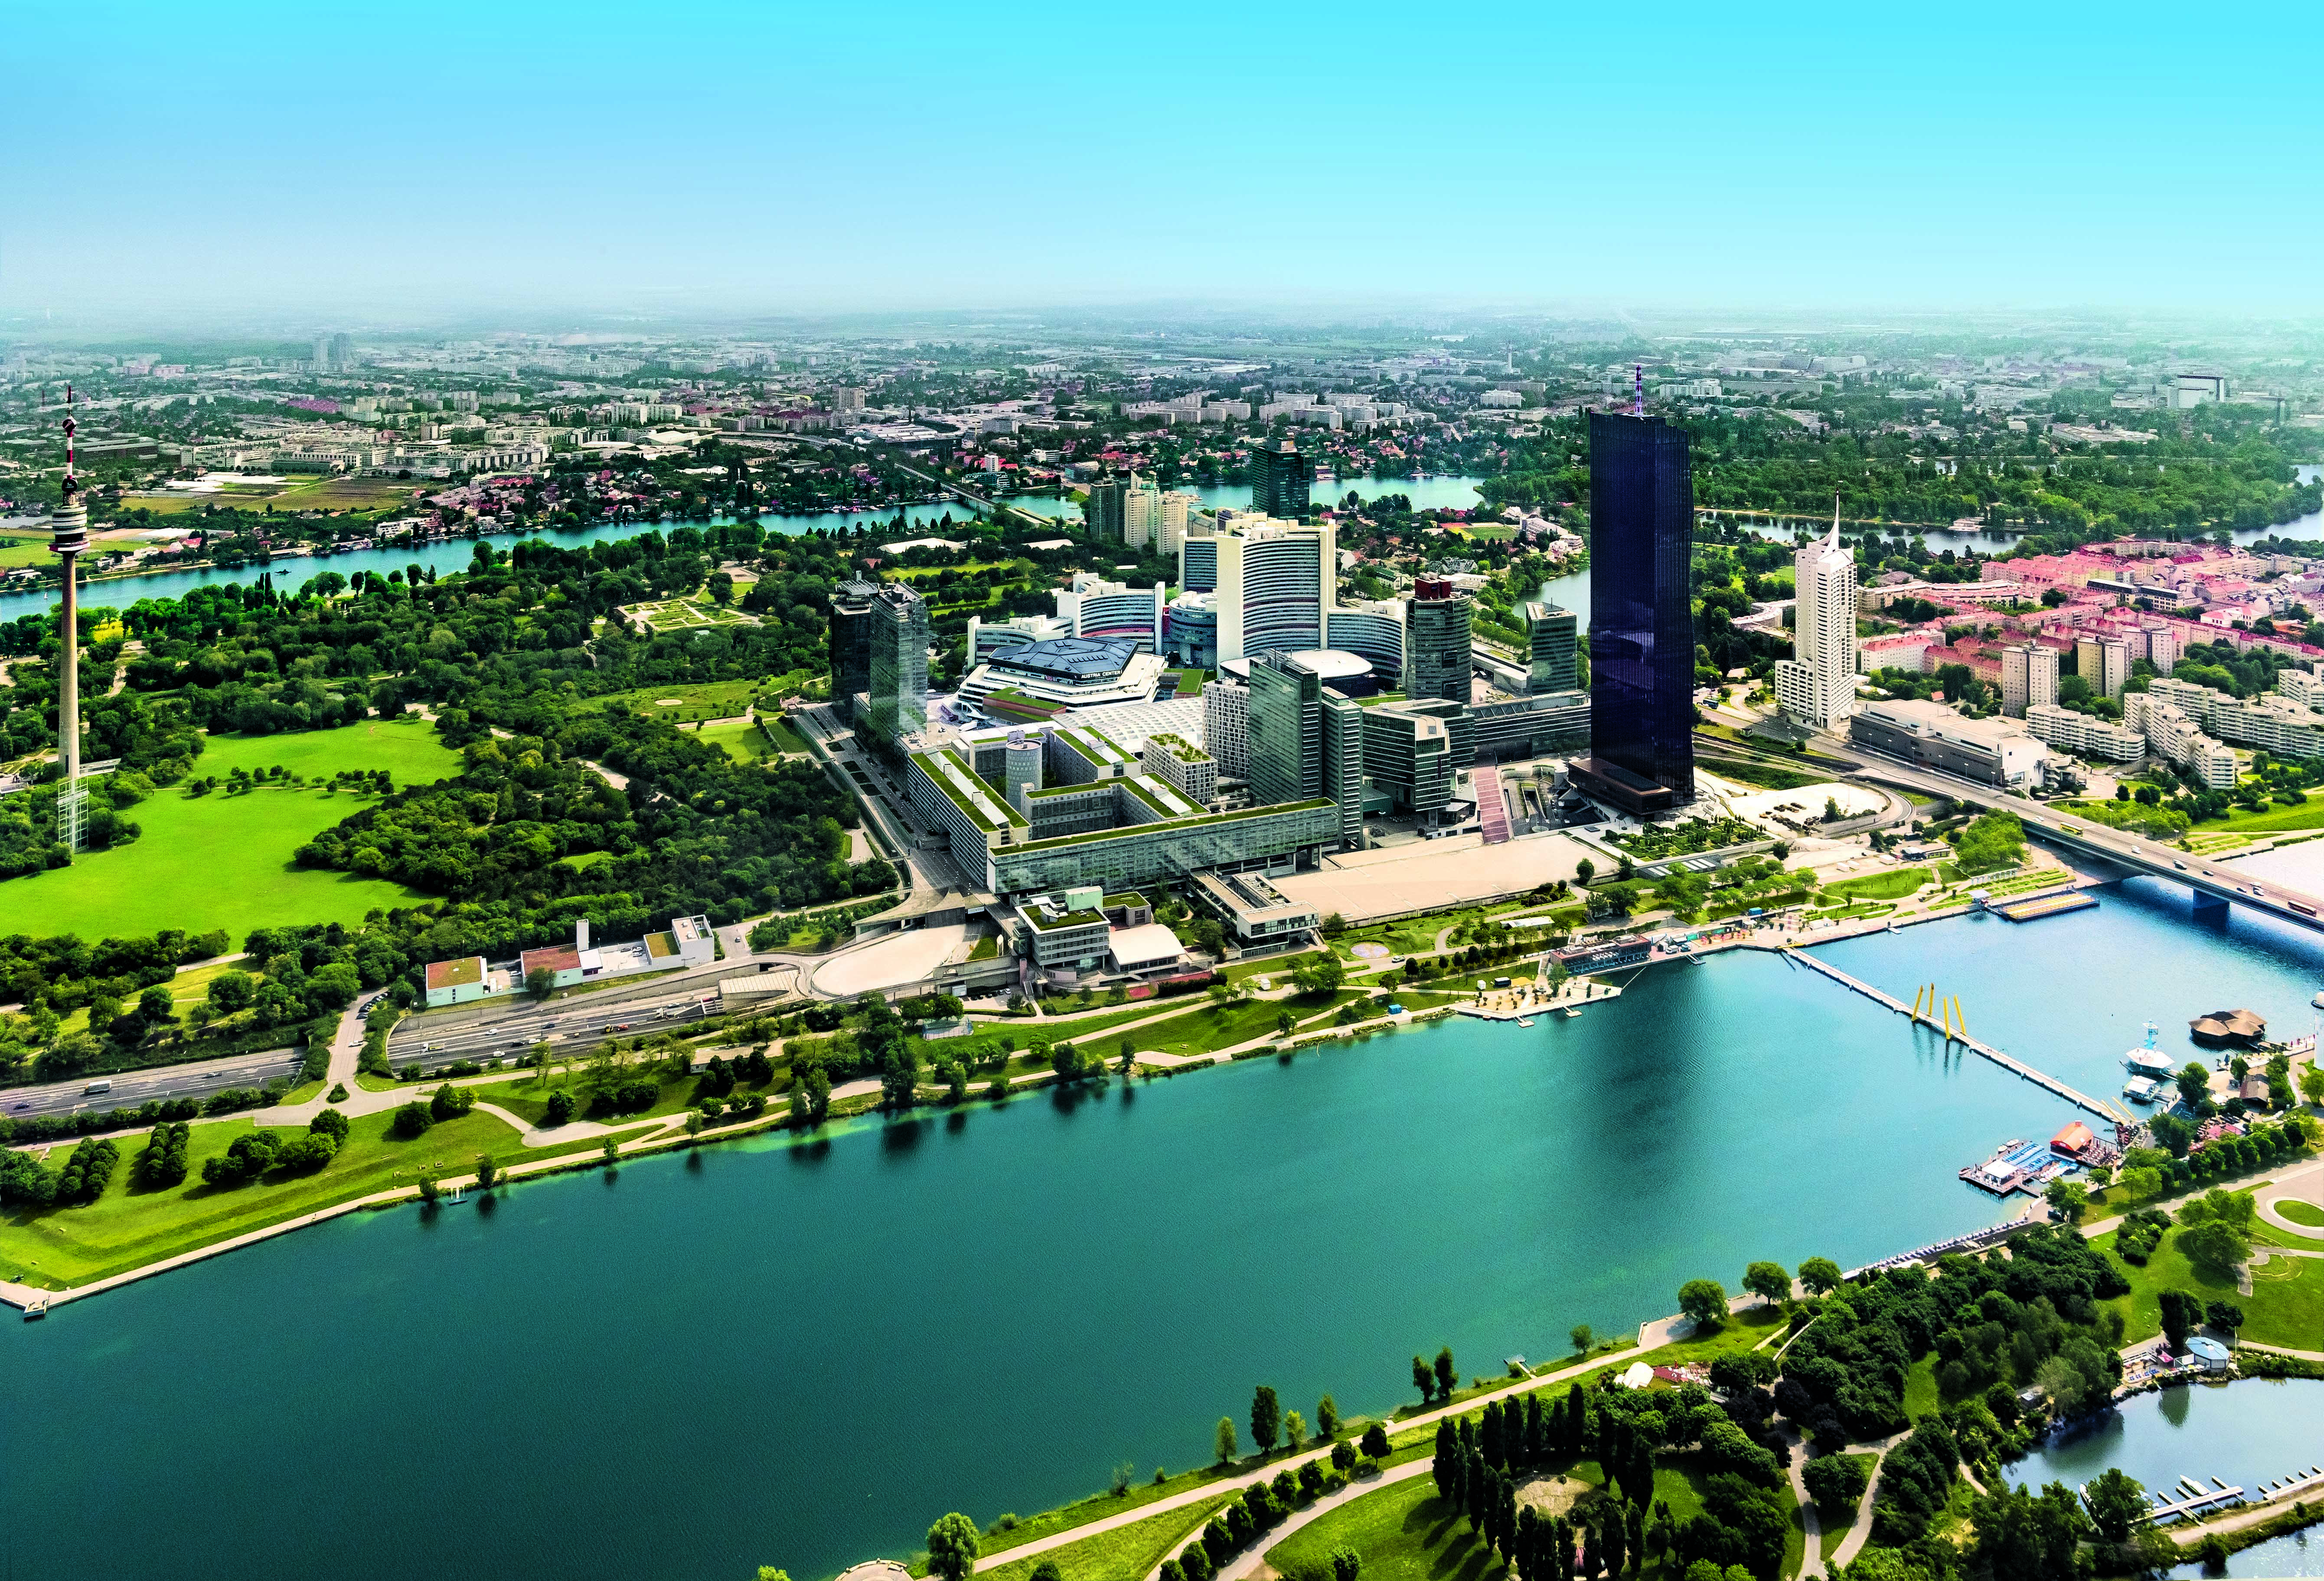 Foto: Luftbild des Austria Center Vienna und der Donau City